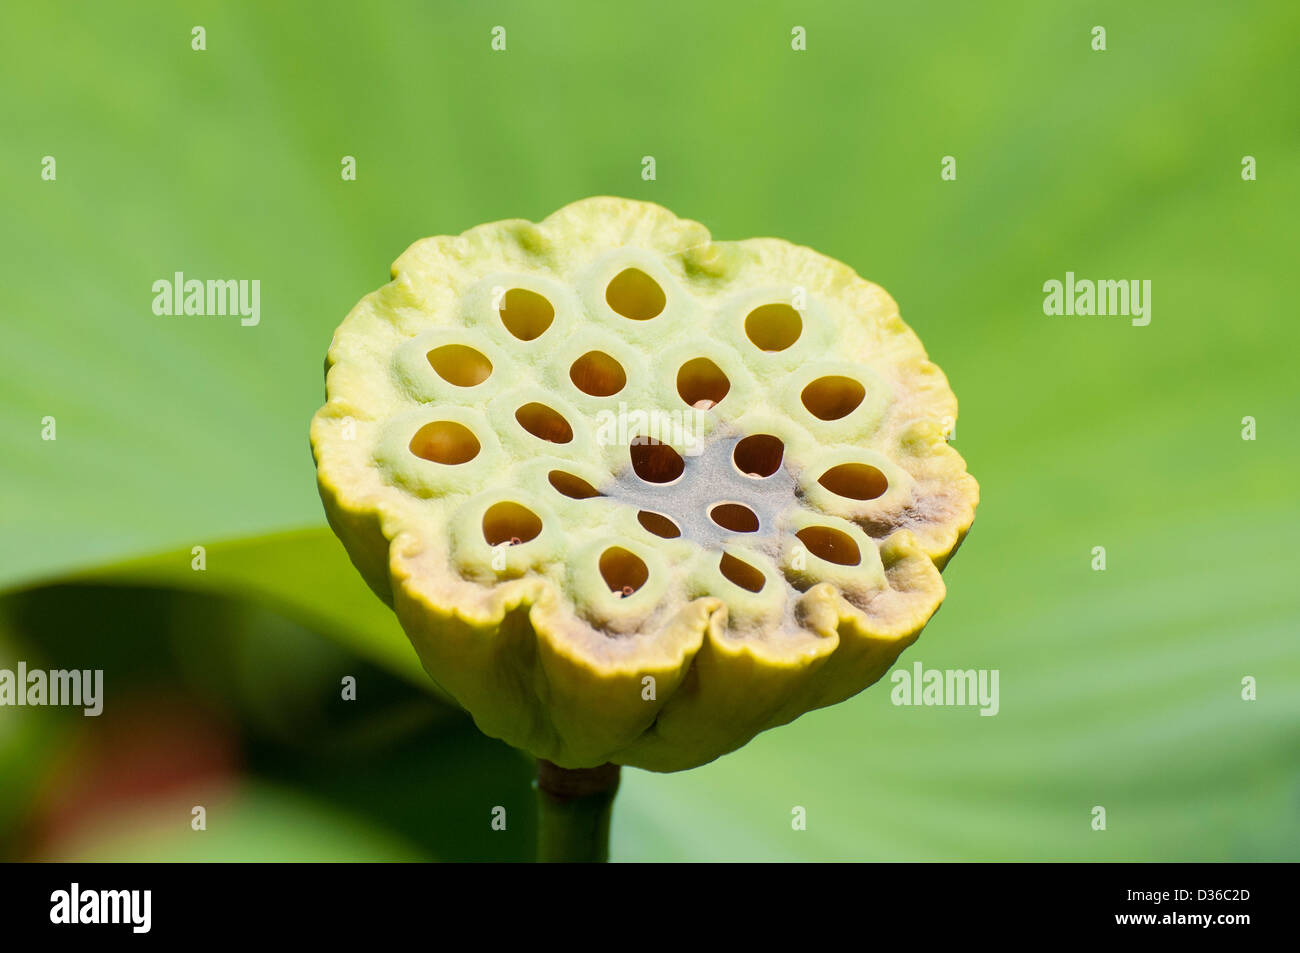 Una flor de loto (Nelumbo nucifera) cabeza de frutos o semillas, en un soleado jardín. Foto de stock